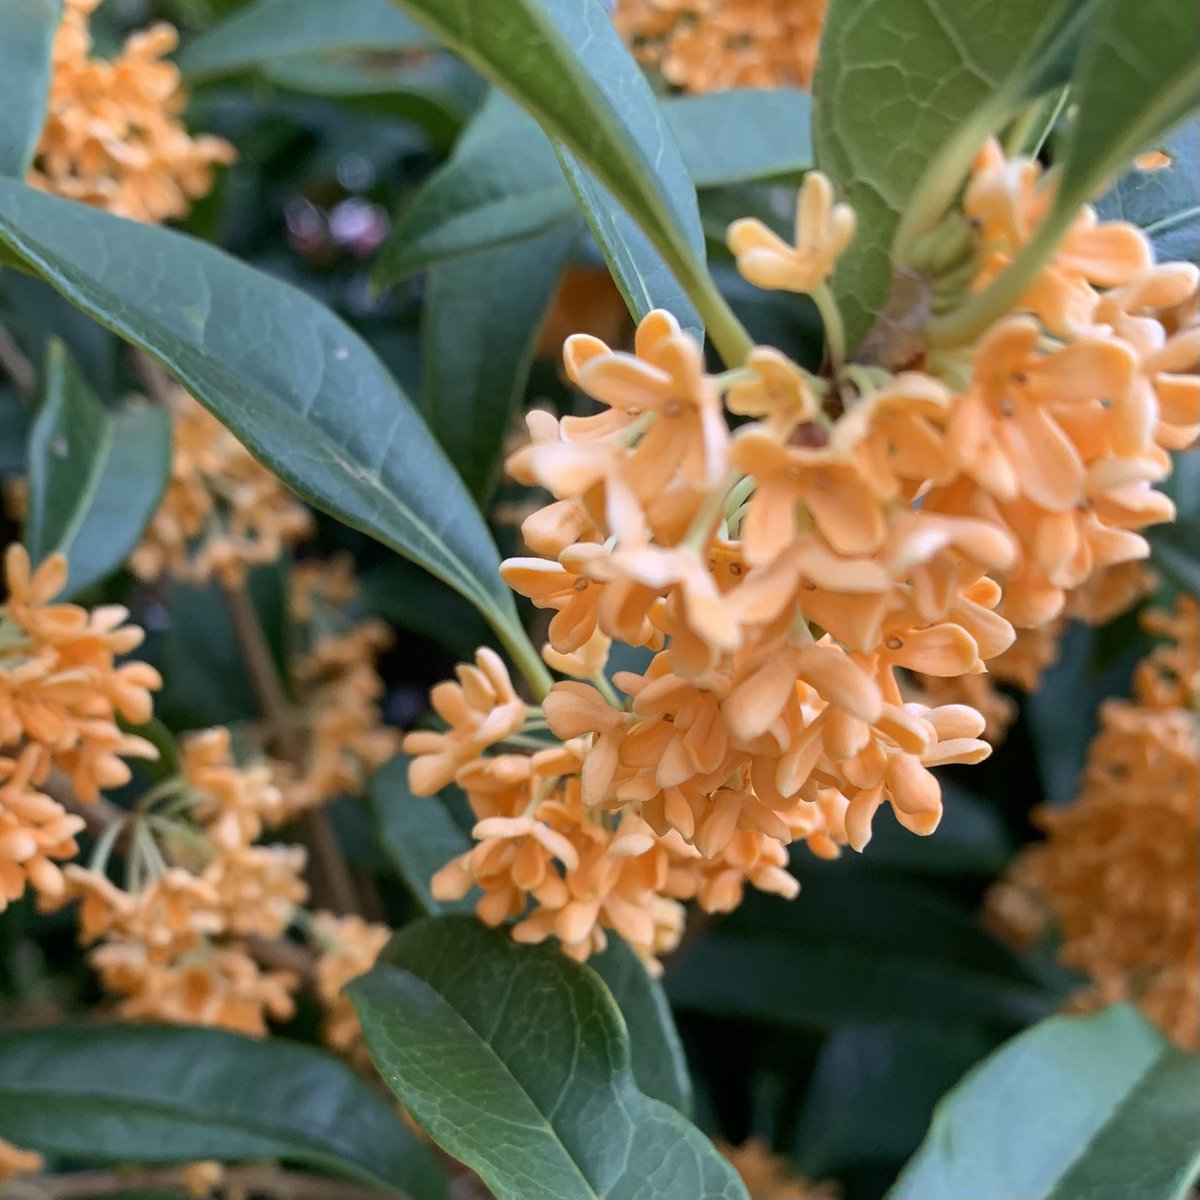 おはよう御座います(*´▽｀)ﾉﾉ 🌸🌸🌸花の便り🌸🌸🌸 金木犀は橙黄色の花を咲かせて甘い香りを放ち、沈丁花・クチナシと合わせて日本の三大芳香木のひとつです